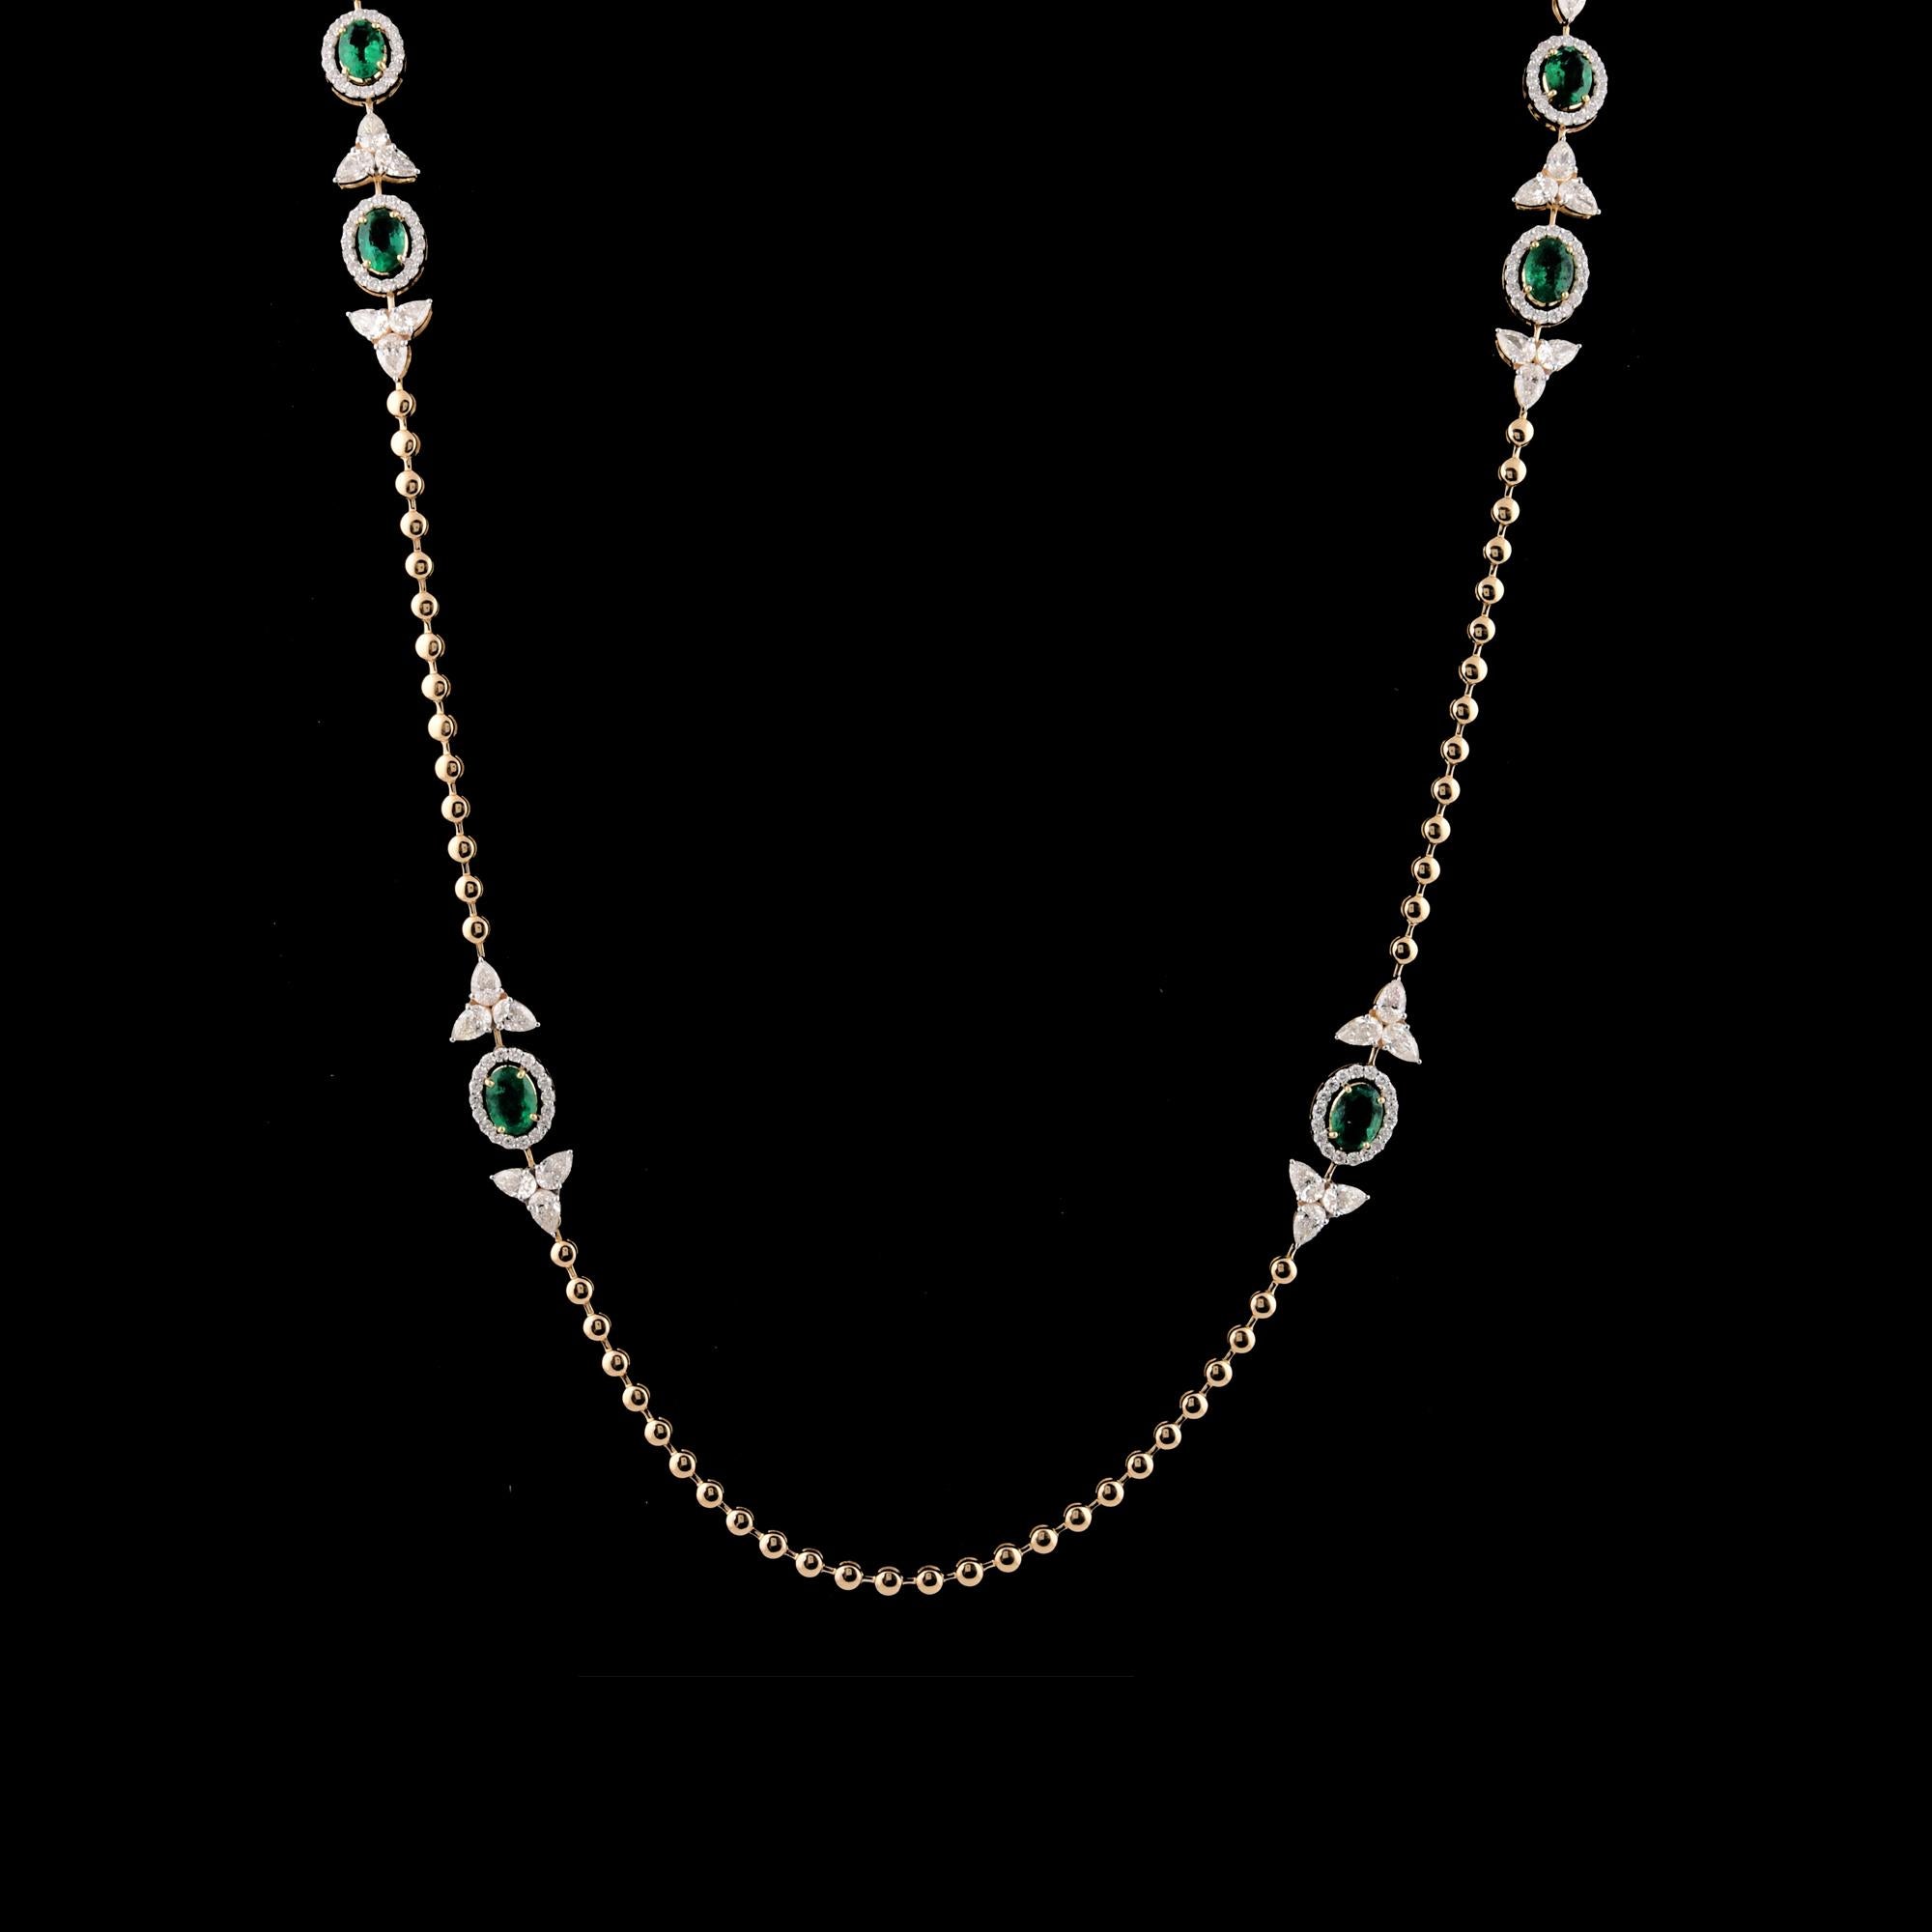 Die Charme-Halskette mit einem sambischen Smaragd und Diamanten aus 18 Karat Gelbgold ist ein atemberaubendes und elegantes Schmuckstück. Die Halskette zeigt typischerweise einen sambischen Smaragd als Herzstück des Charmes.

Artikel-Code :-